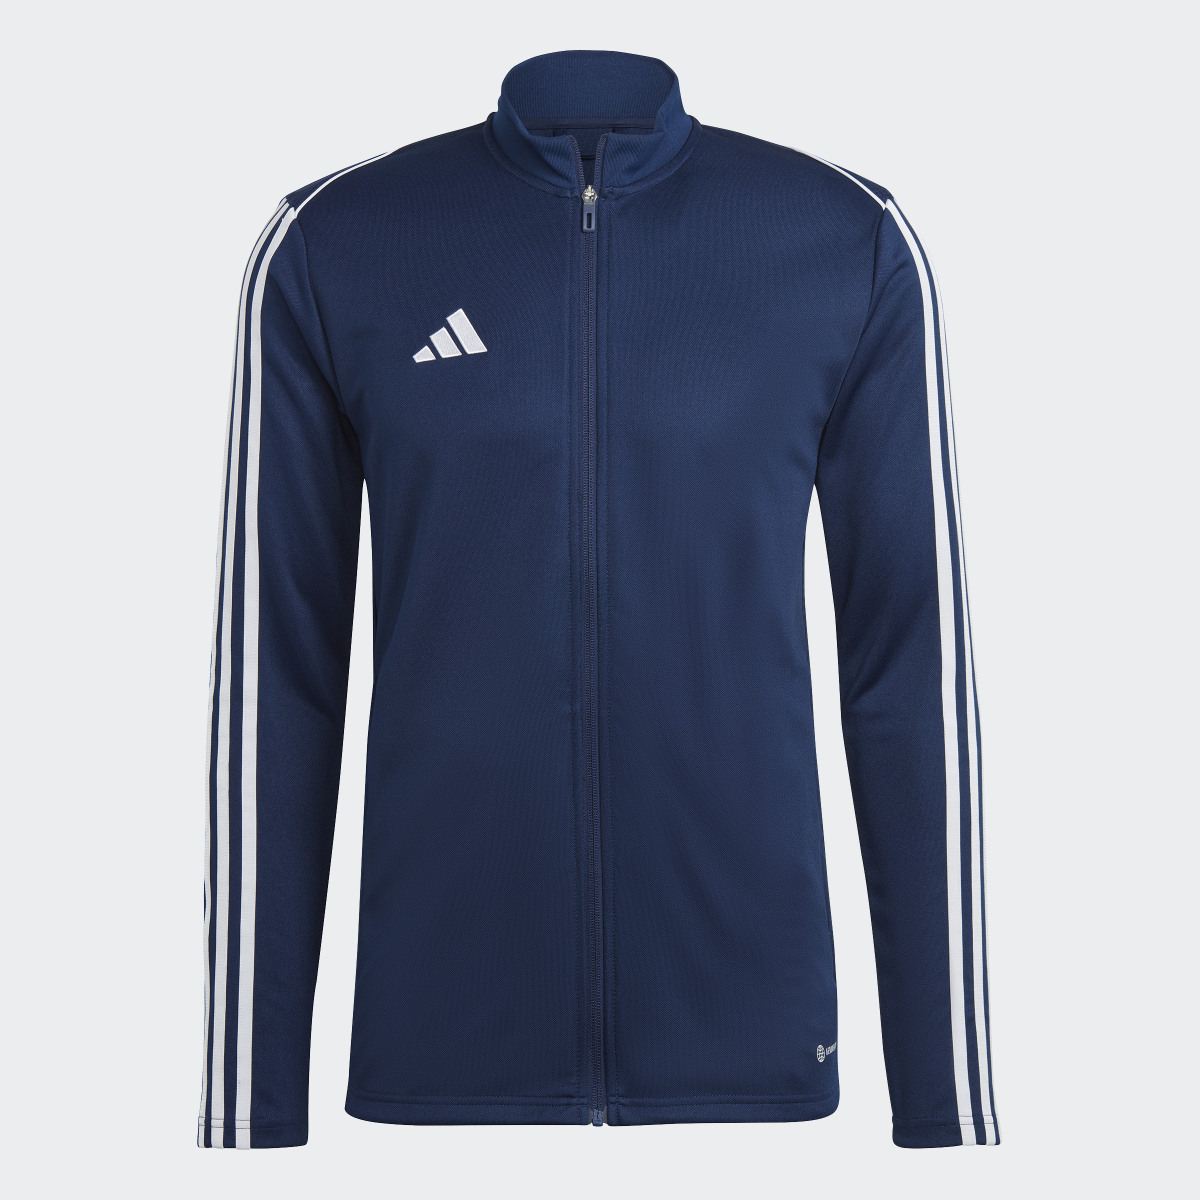 Adidas Tiro 23 League Training Jacket. 5